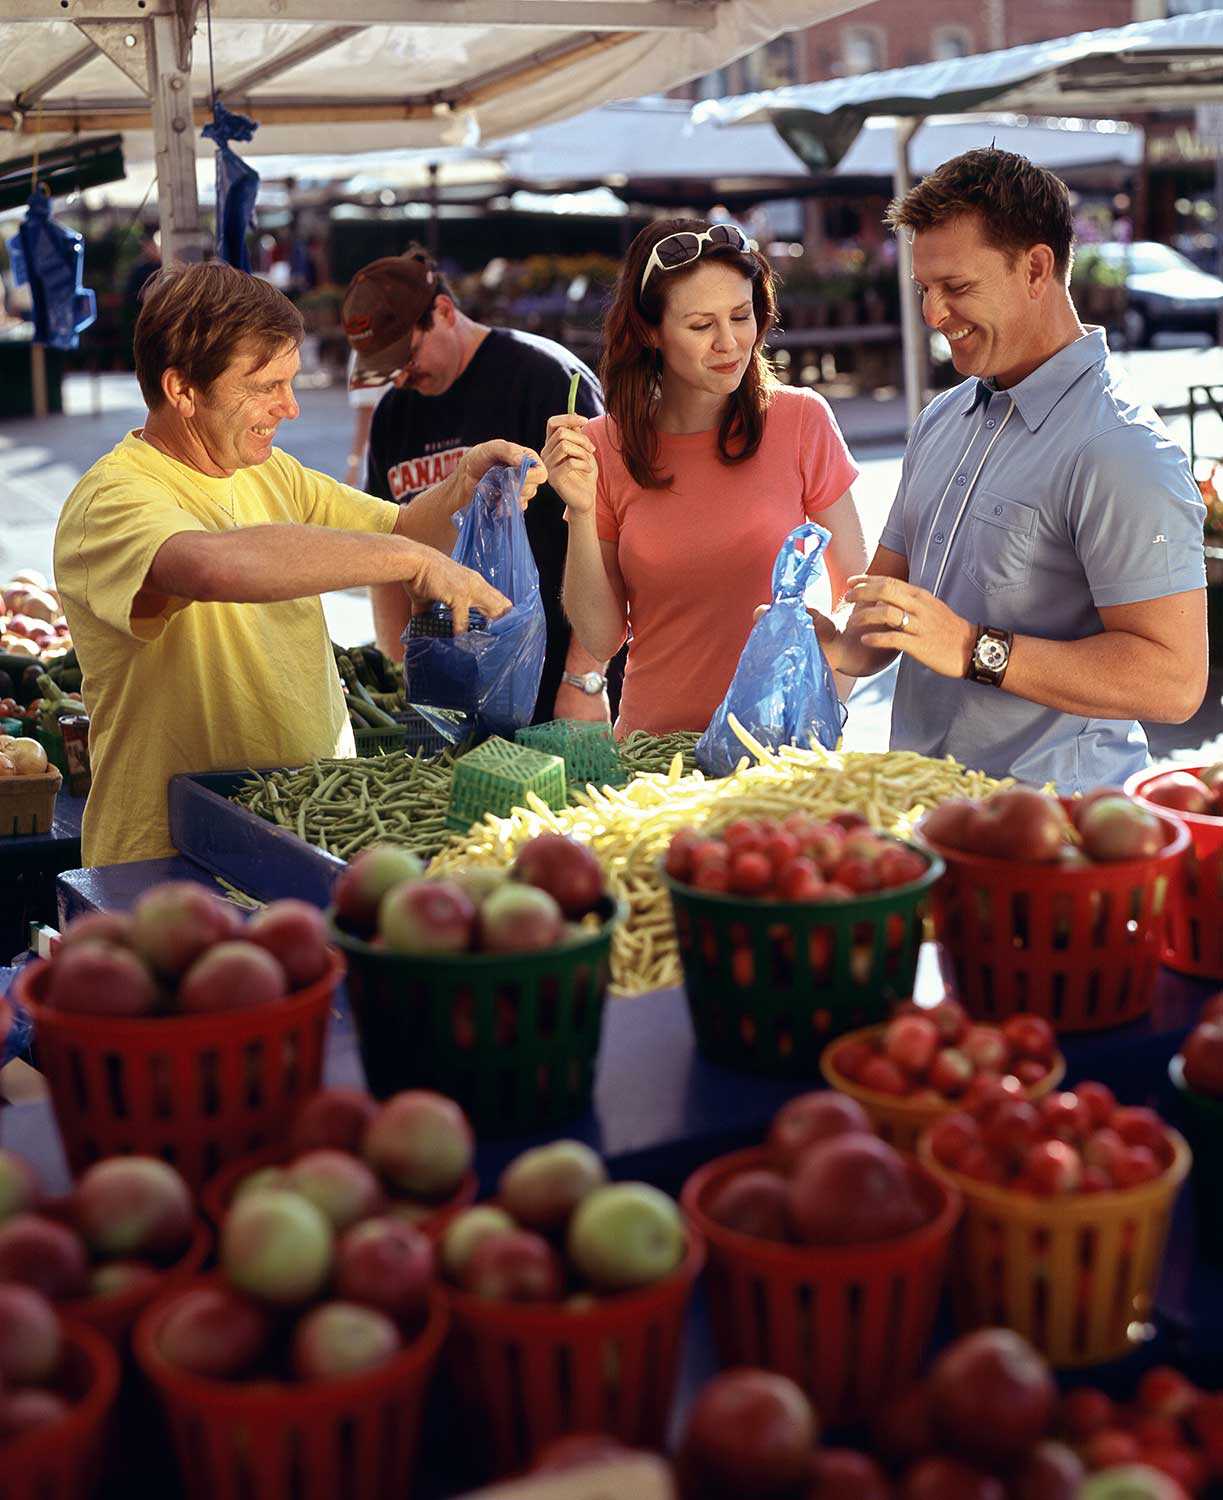 Les gens sont de plus en plus conscients non seulement des aliments qu’ils consomment, mais aussi de leur provenance. © Tourisme Ontario, 2009